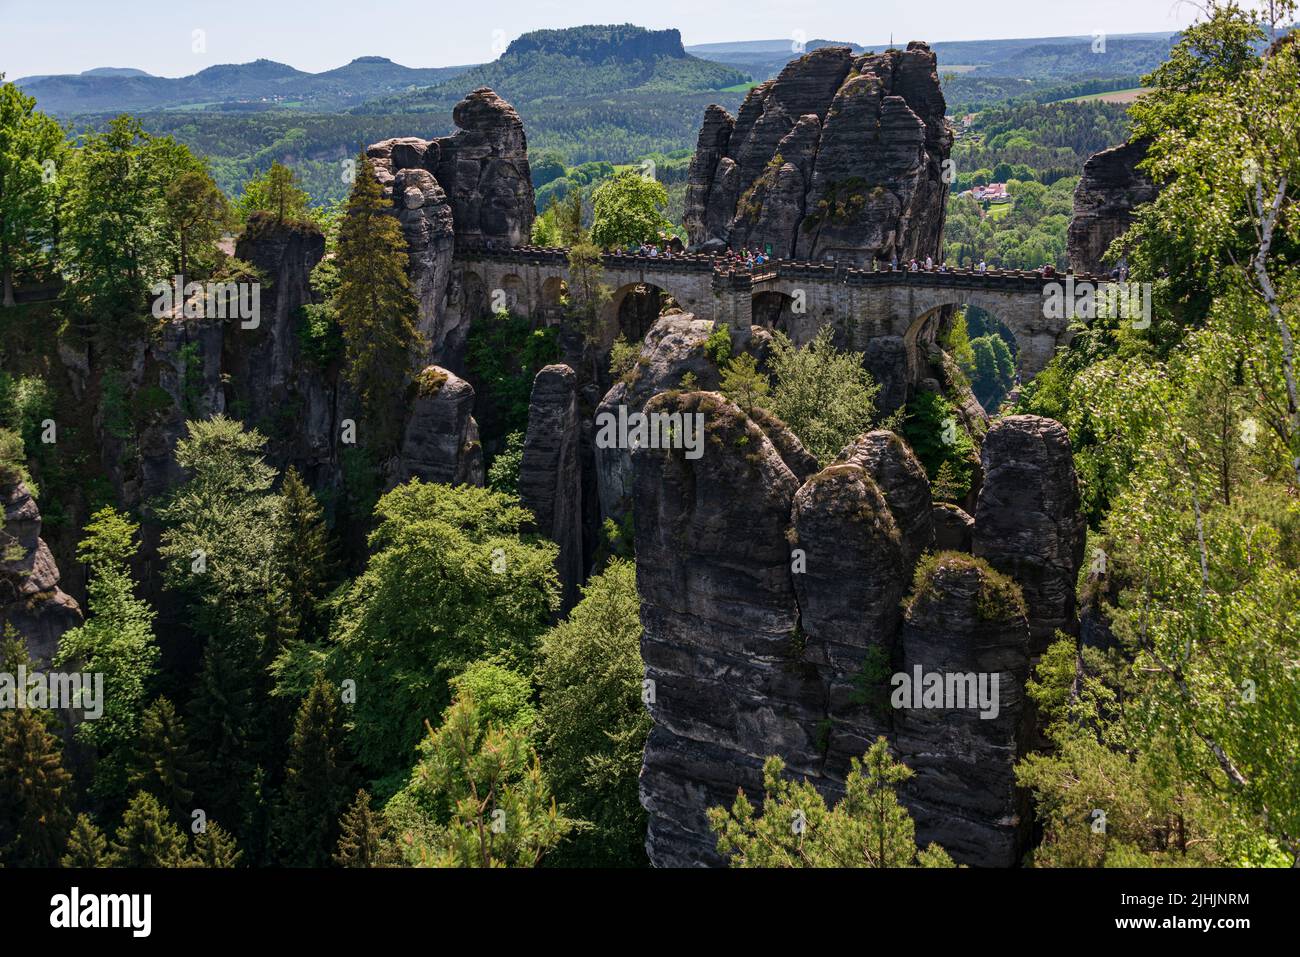 Die Bastei ein Ort im Elbsandsteingebirge mit herrlichem Ausblick auf die Landschaft und das Elbtal Banque D'Images